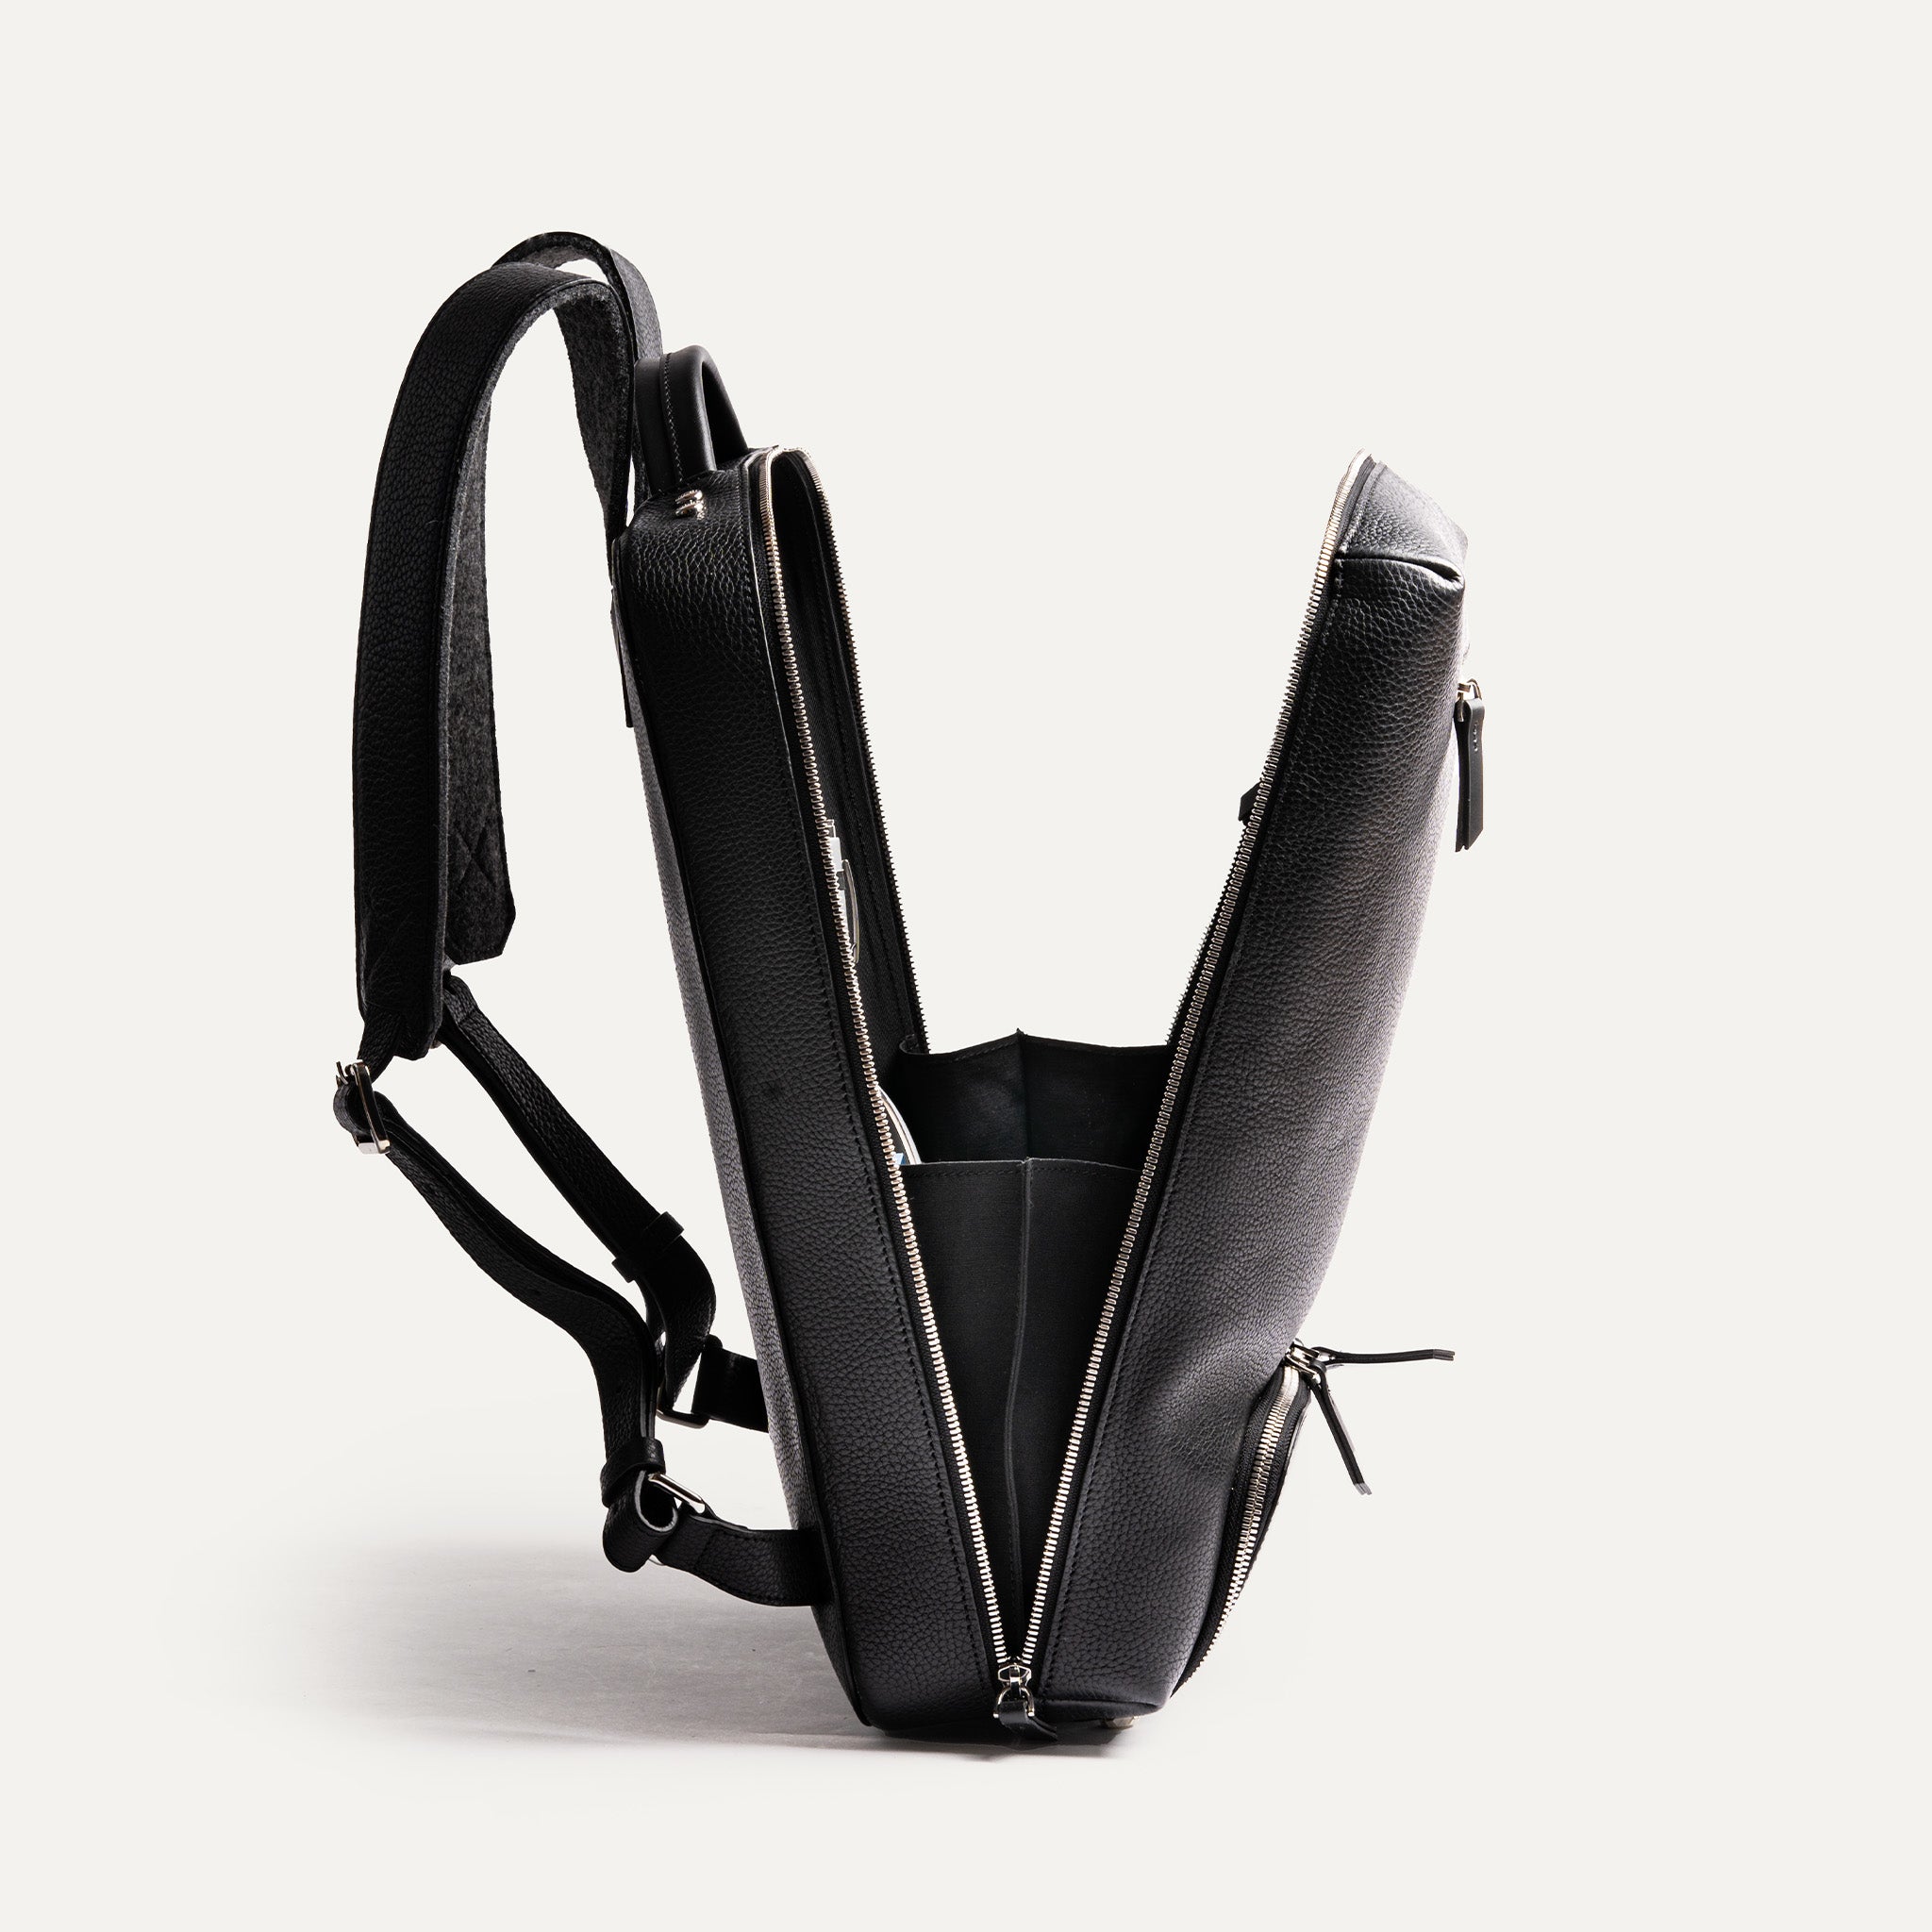 Ce sac à dos offre un compartiment rembourré pour ordinateur portable et de multiples espaces de rangement, ce qui en fait l’accessoire idéal pour ceux qui ont besoin d’organisation.